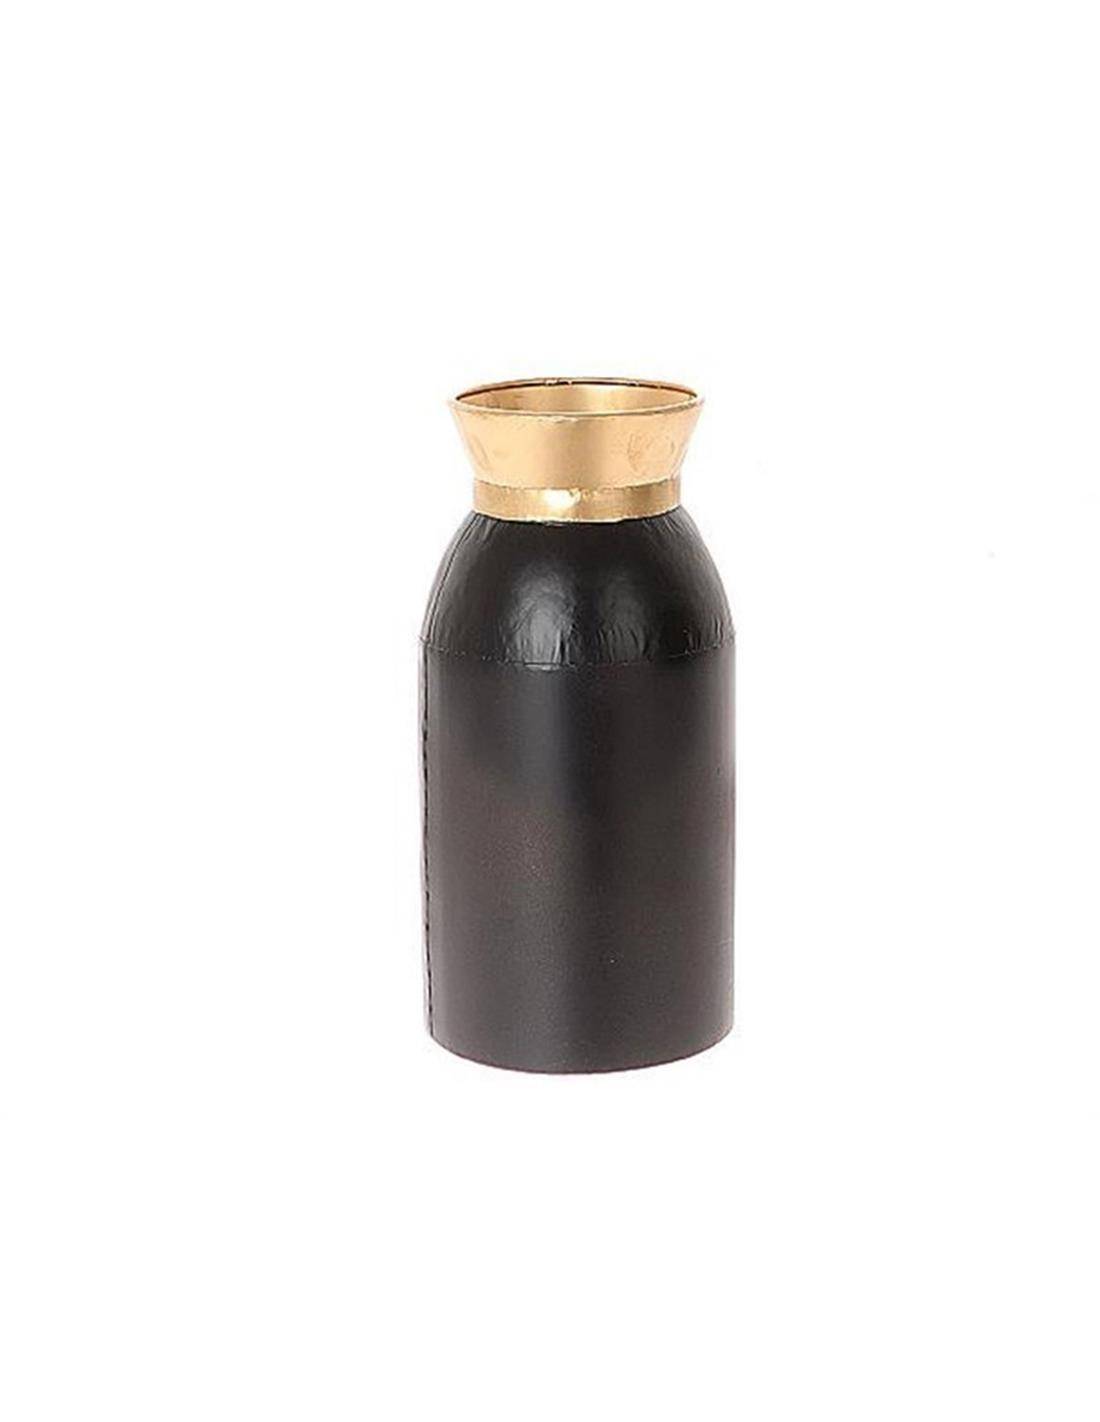 Βάζο μεταλ.μαύρο με χρυσό rim 14,3Χ30,3